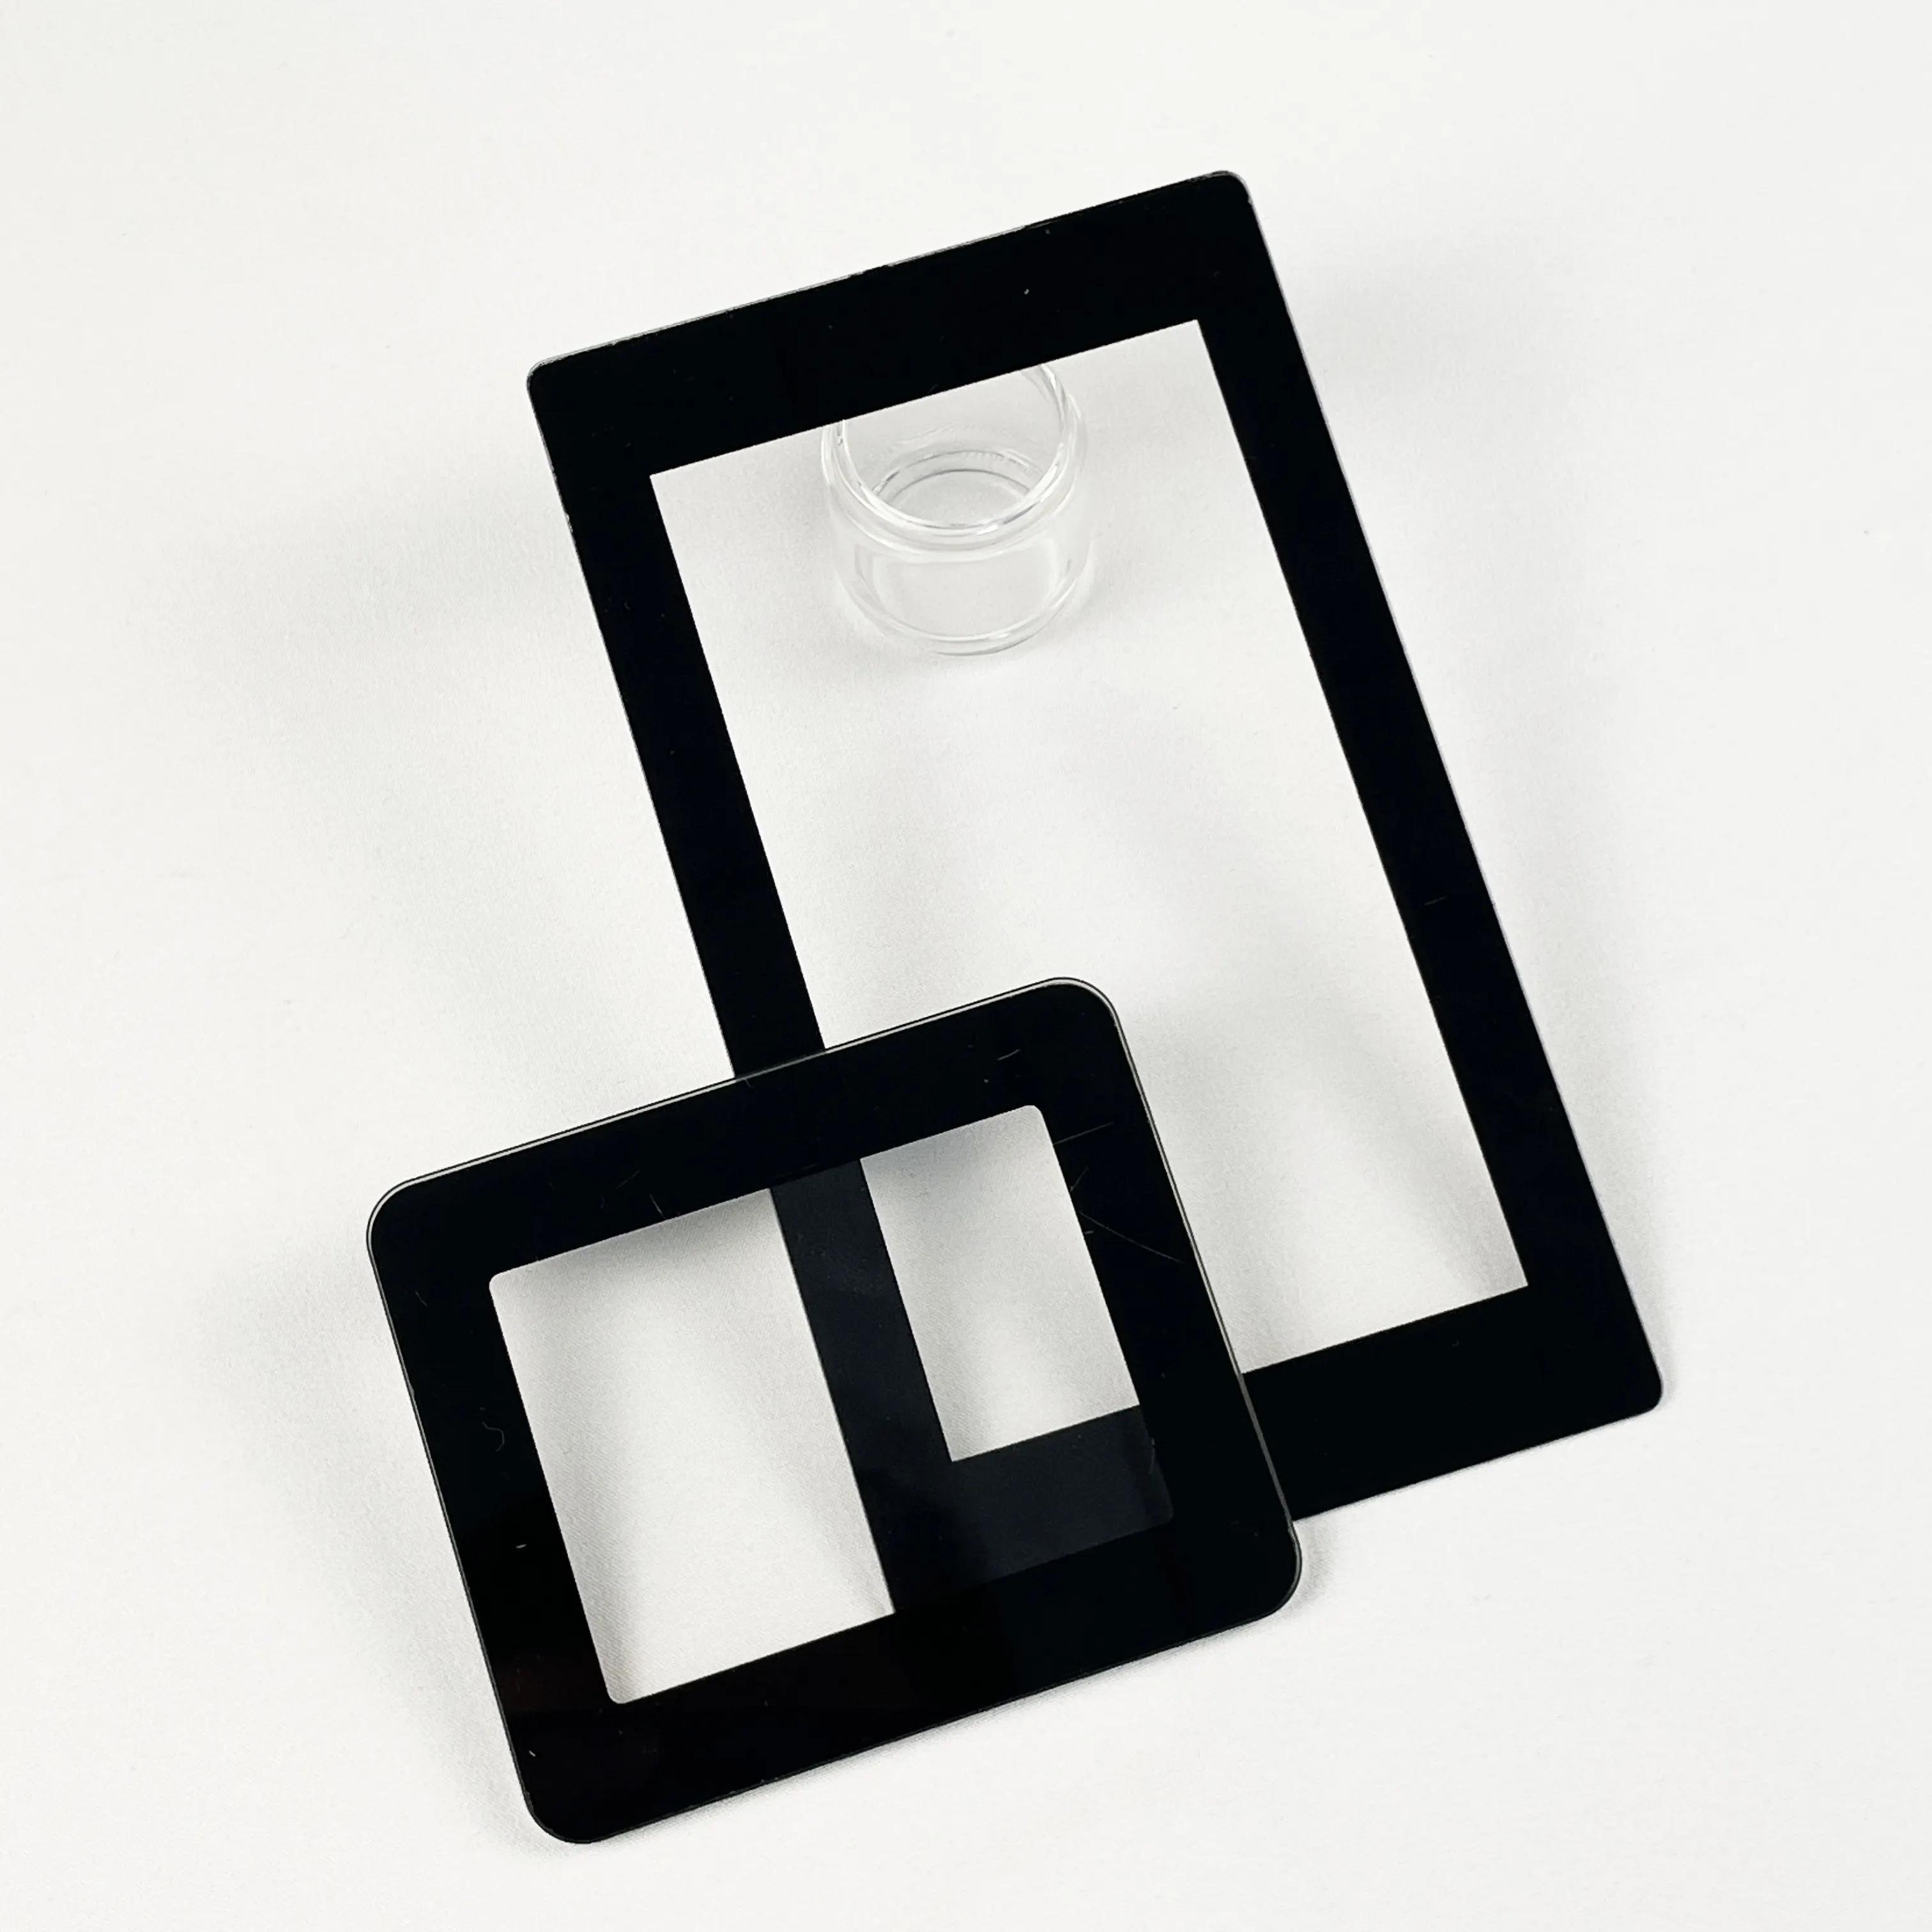 Kustom 2mm 3mm tampilan jendela Chamfered layar sutra hitam dicetak batas Panel kaca Tempered